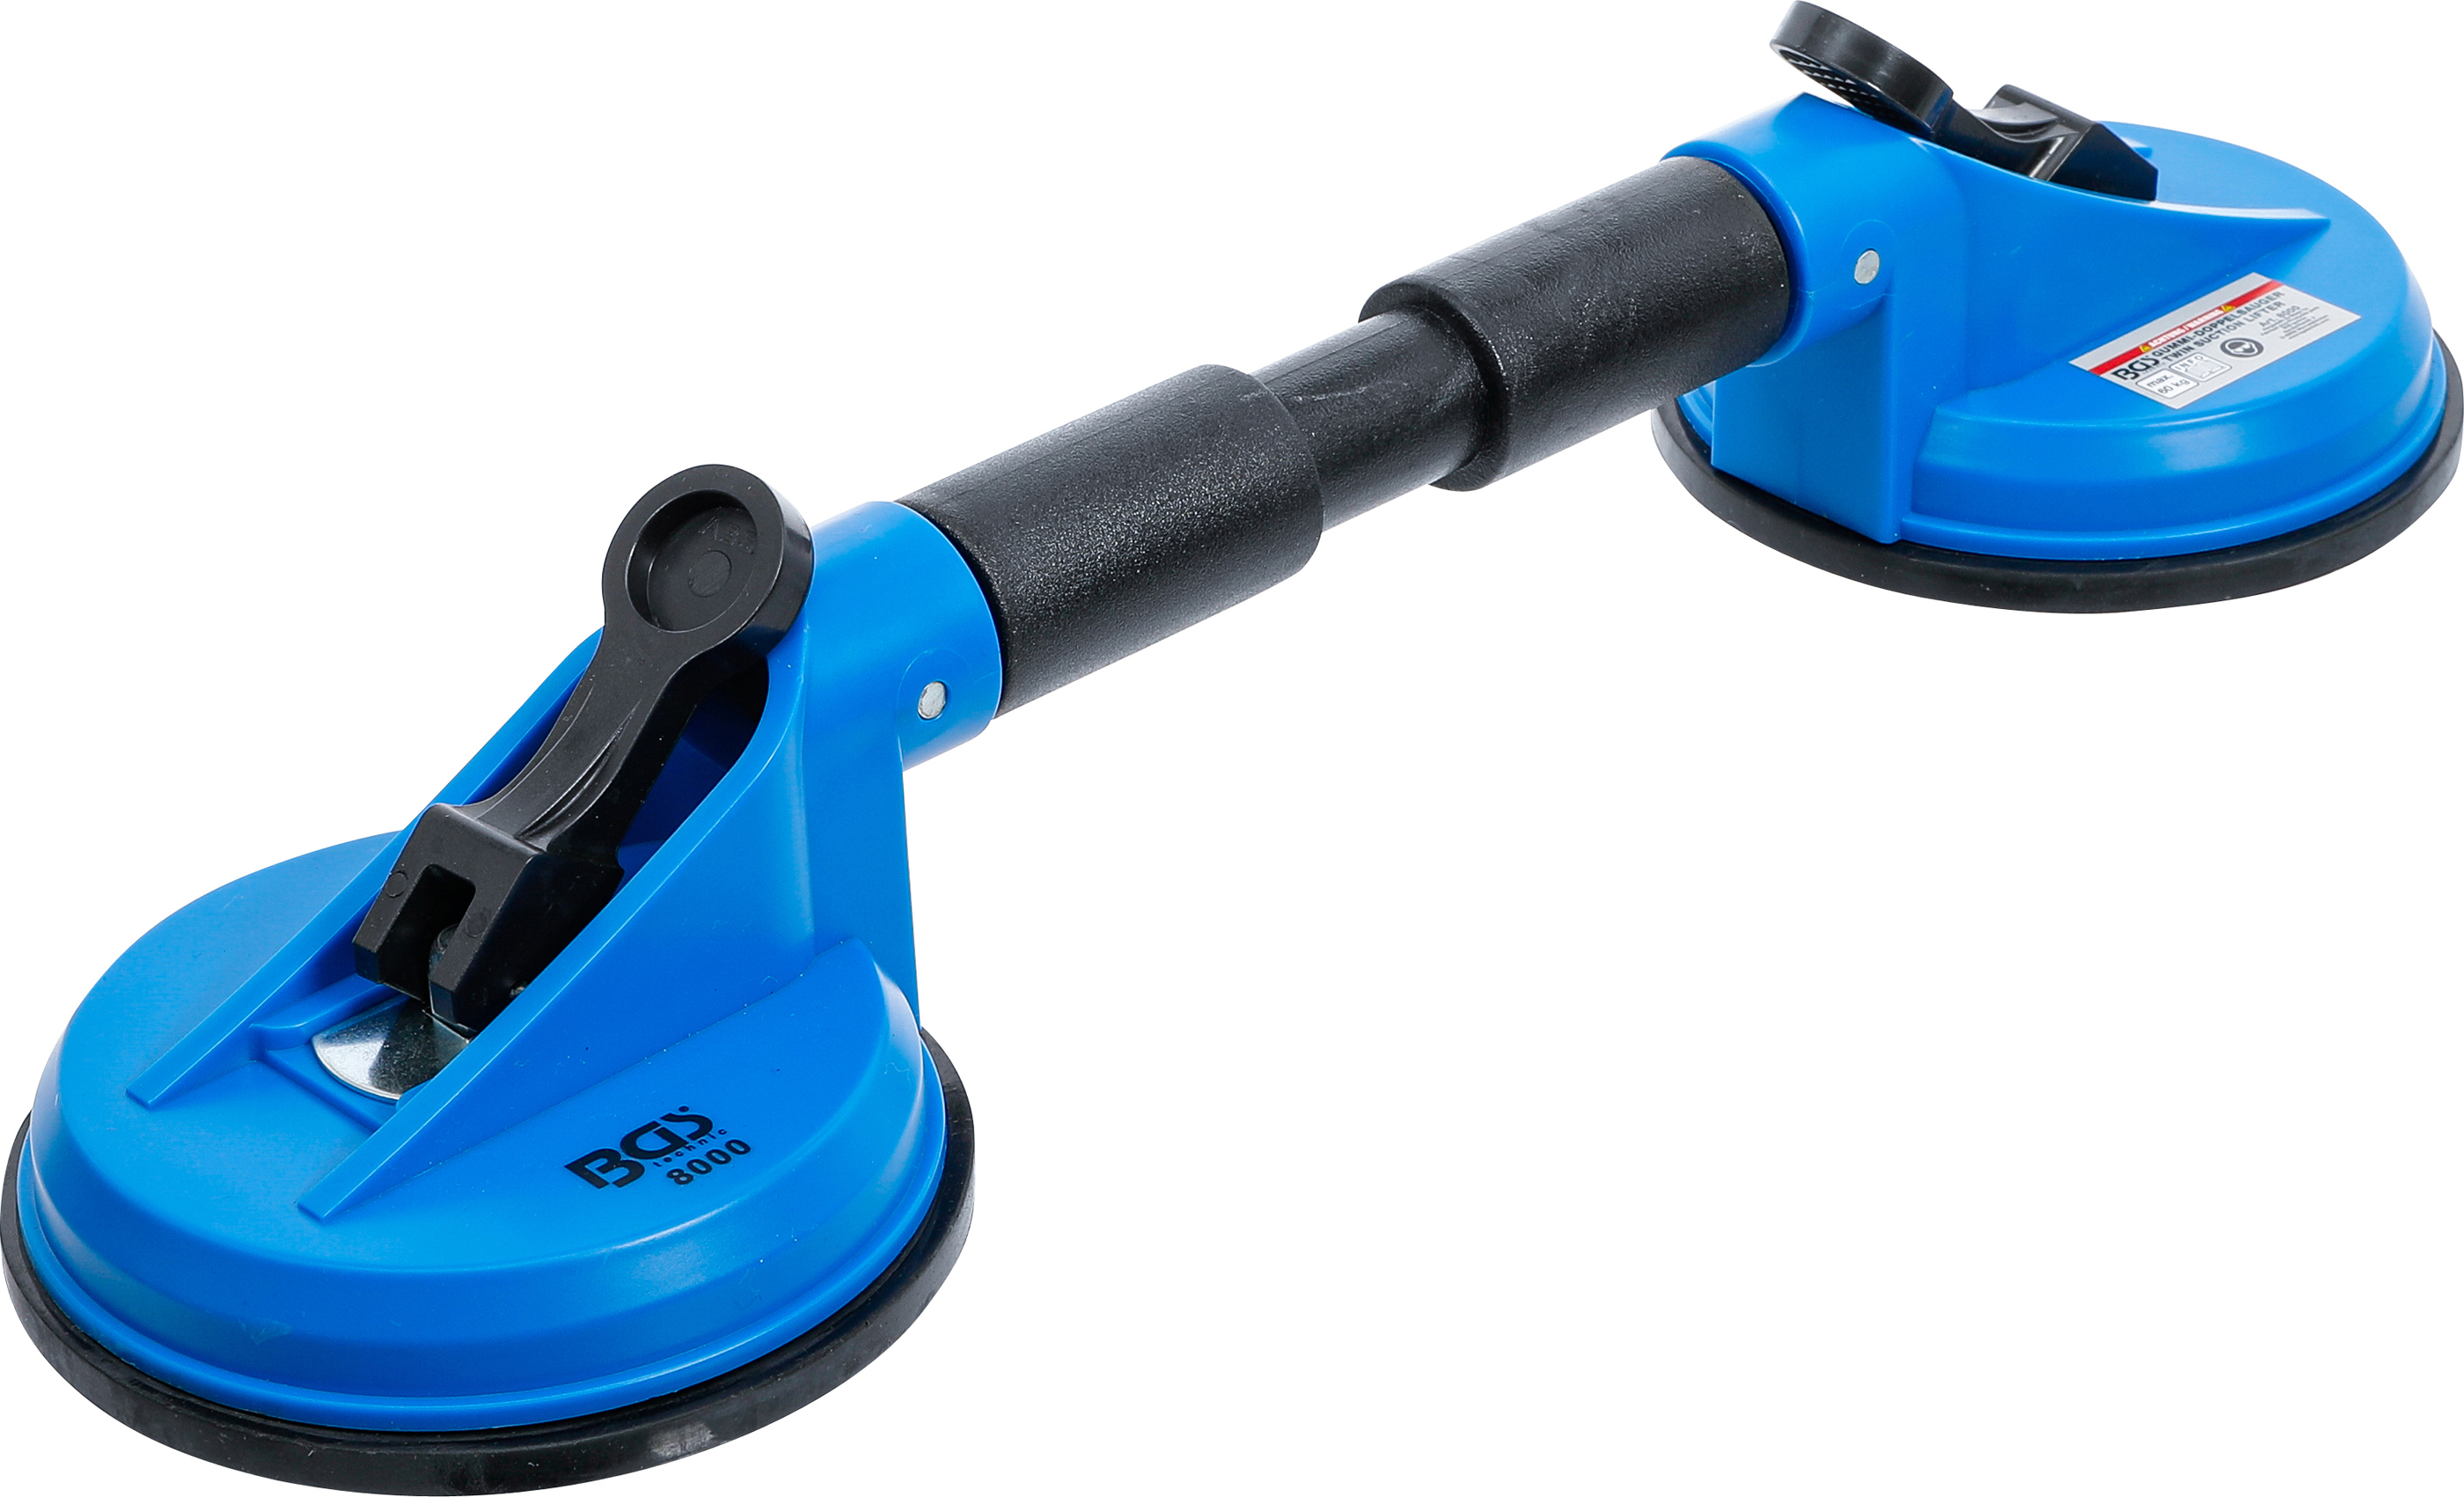 BGS Gummi-Doppelsauger | ABS | mit flexiblen Köpfen | Ø 120 mm | 390 mm